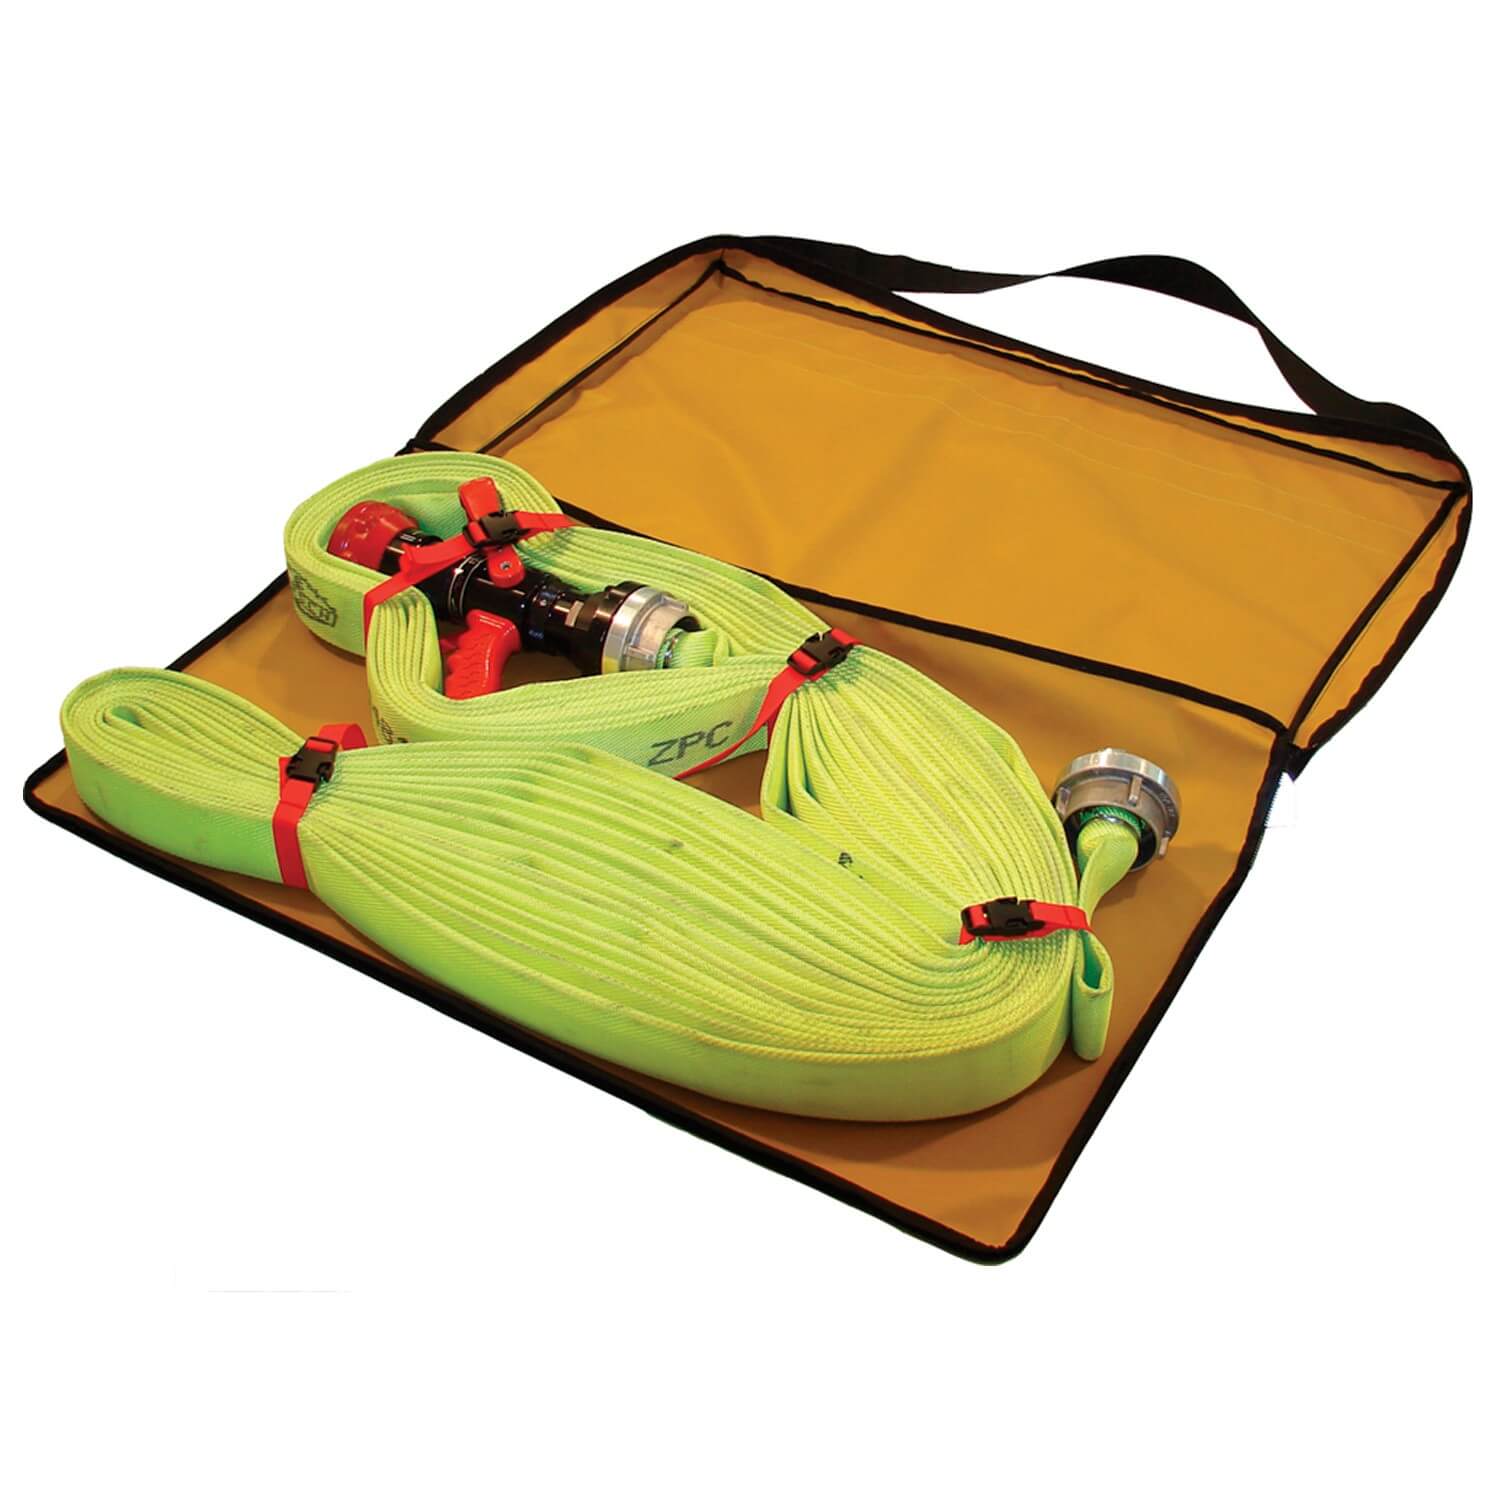 tee-uu RAP-EX Schlauchpaket-Tasche.Für Lagerung und Einsatz von Schlauchpaketen, kann dank Tragegurt bis zur Rauchgrenze über der Schulter transportiert werden. Ausreichend Platz für mobilen Rauchanschluss.87 x 52 x 7 cm.Gewicht 1,0 kg.